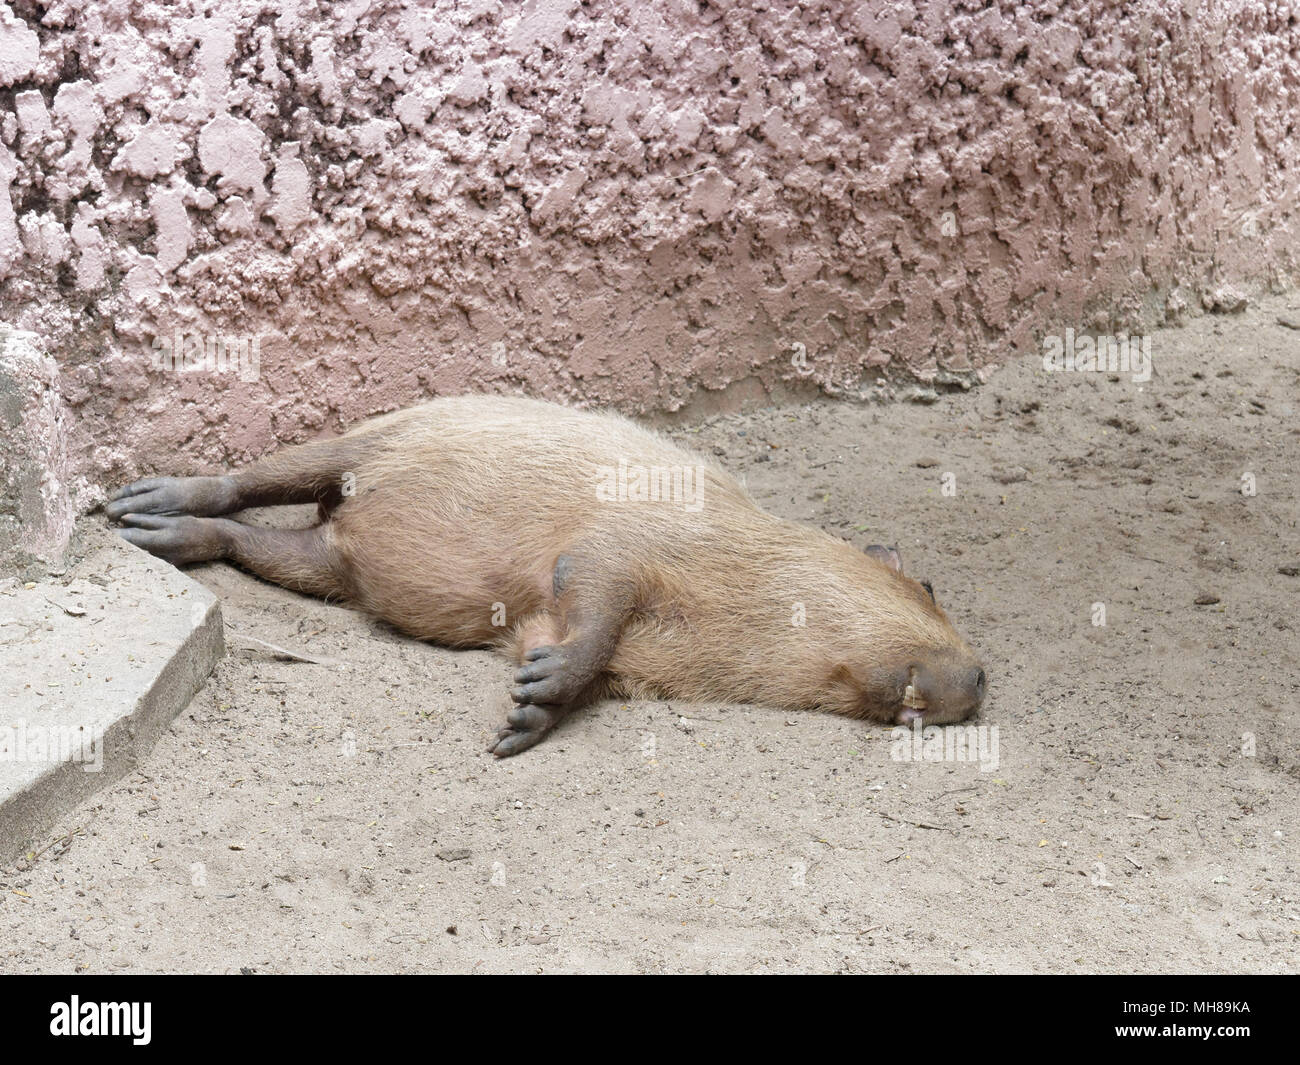 Big brown capybara, plus grands rongeurs, dormir comme un journal ou de dormir à l'écart ou mort au monde avec la bouche ouverte montre ses deux grandes dents montrent la fatigue, fatigue, lassitude et d'épuisement Banque D'Images